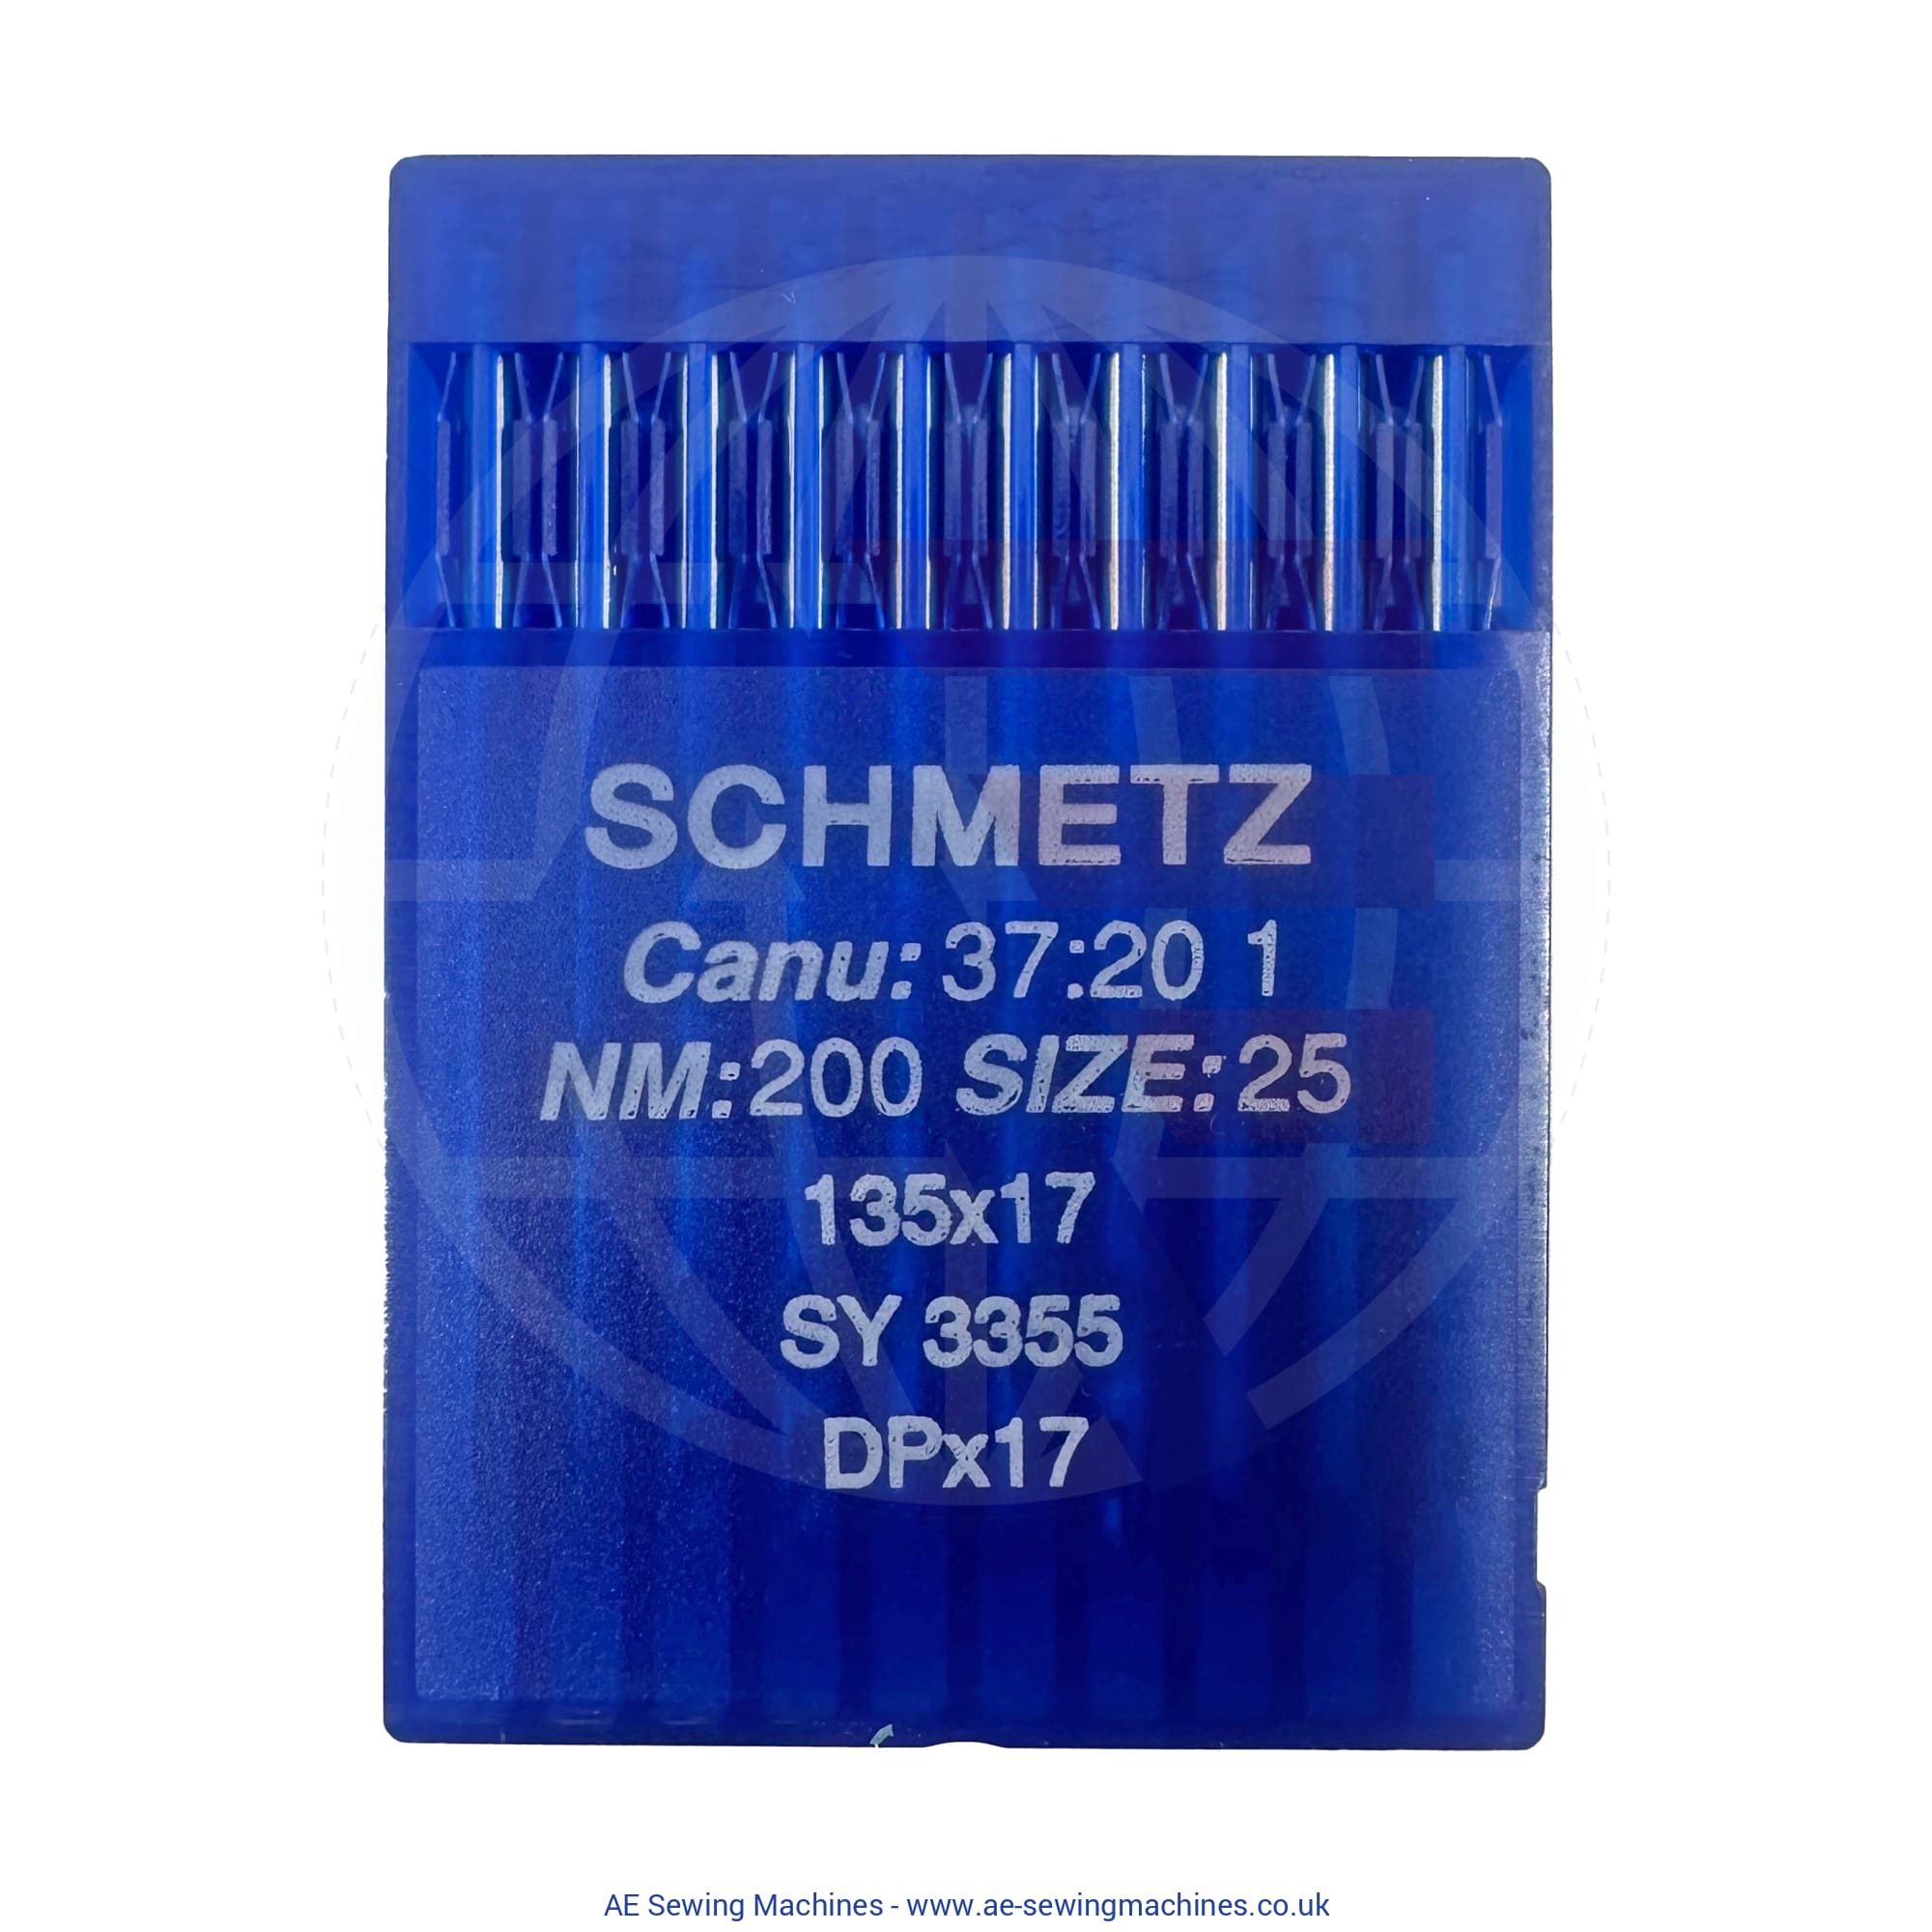 Schmetz 135X17 Regular Point Needles 200 Sewing Machine